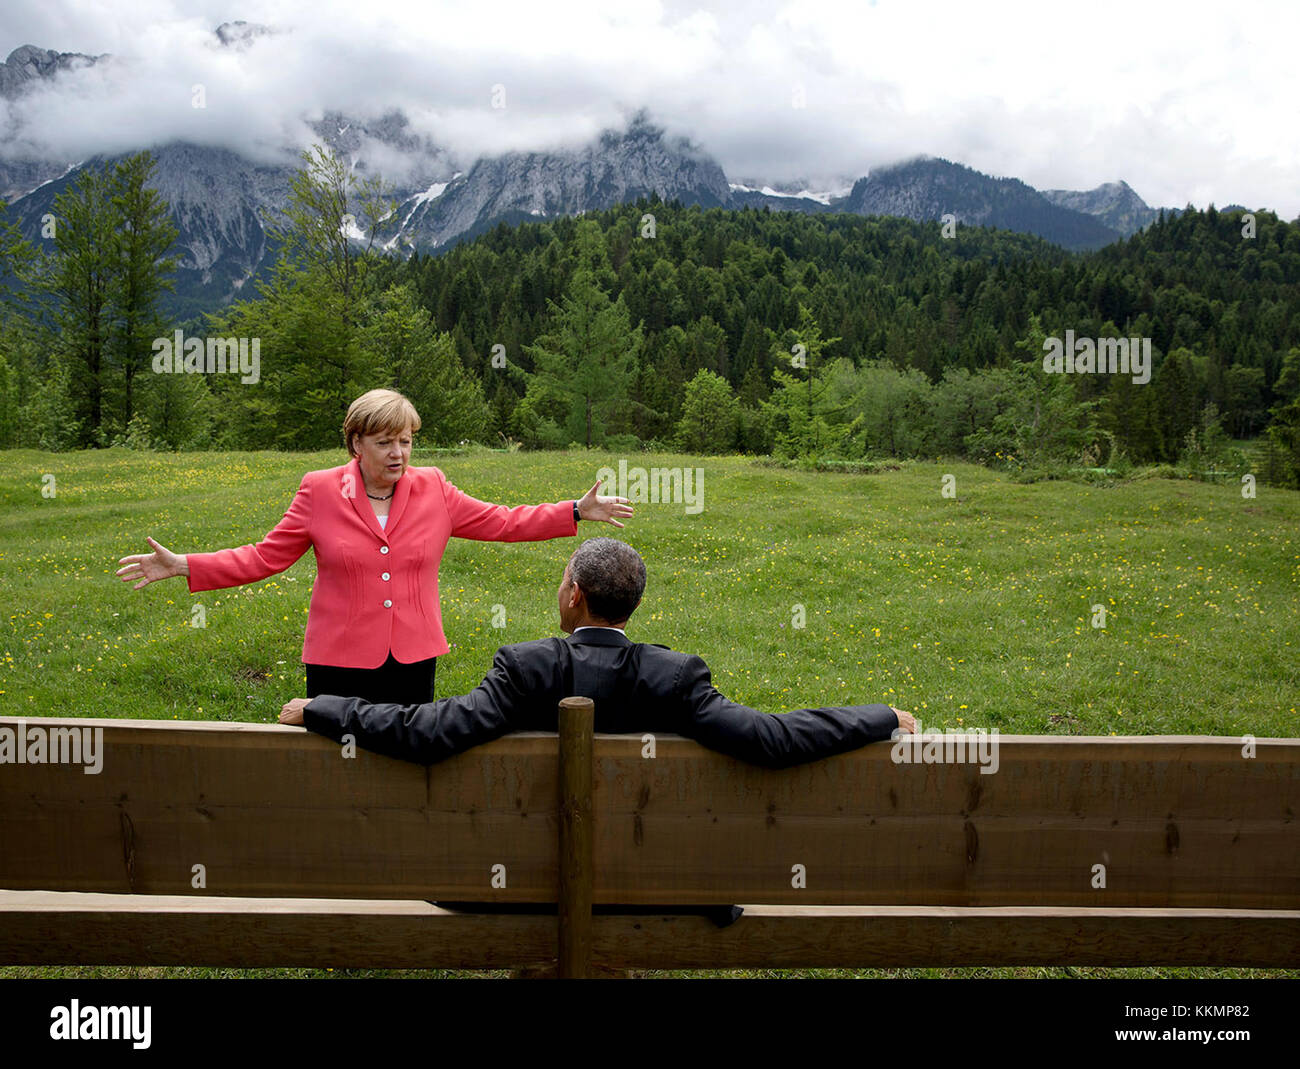 Juni 8, 2015", die wir auf dem G7-Gipfel in krün, Deutschland. Bundeskanzlerin Angela Merkel forderte die Staats- und Regierungschefs und übertreffen die Gäste den Weg zu einer Bank für ein Gruppenfoto zu machen. Der Präsident geschah zuerst nach unten zu sitzen, dicht gefolgt von den Bundeskanzler. Ich hatte nur mal ein paar Frames vor dem Hintergrund machen mit anderen Menschen durcheinandergeworfen wurde." (amtliche weiße Haus Foto von Pete Souza) diese offiziellen Weißen Haus Foto nur für die Veröffentlichung von Nachrichten Organisationen und/oder für den persönlichen Gebrauch drucken durch das Subjekt (s) des Fotos verfügbar ist. Das Foto darf nicht manipul Stockfoto